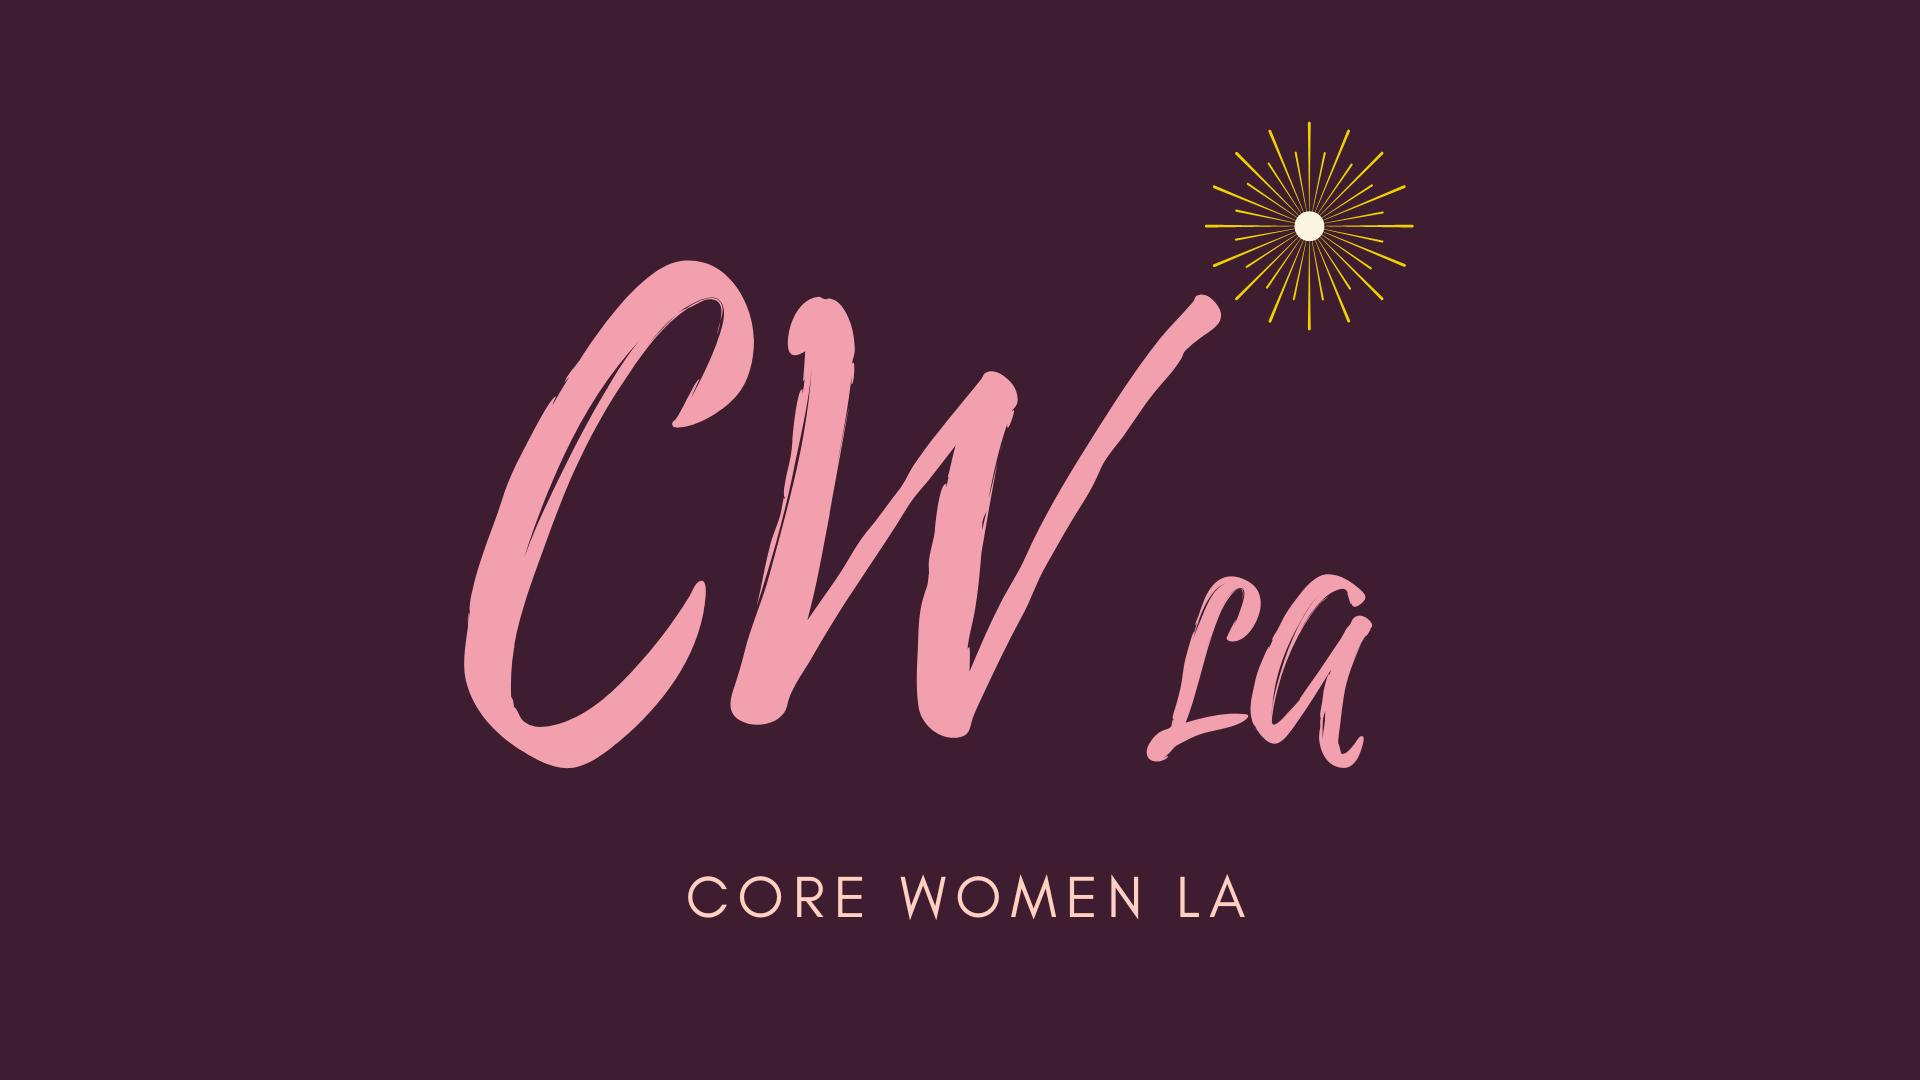 Core Women LA Messages